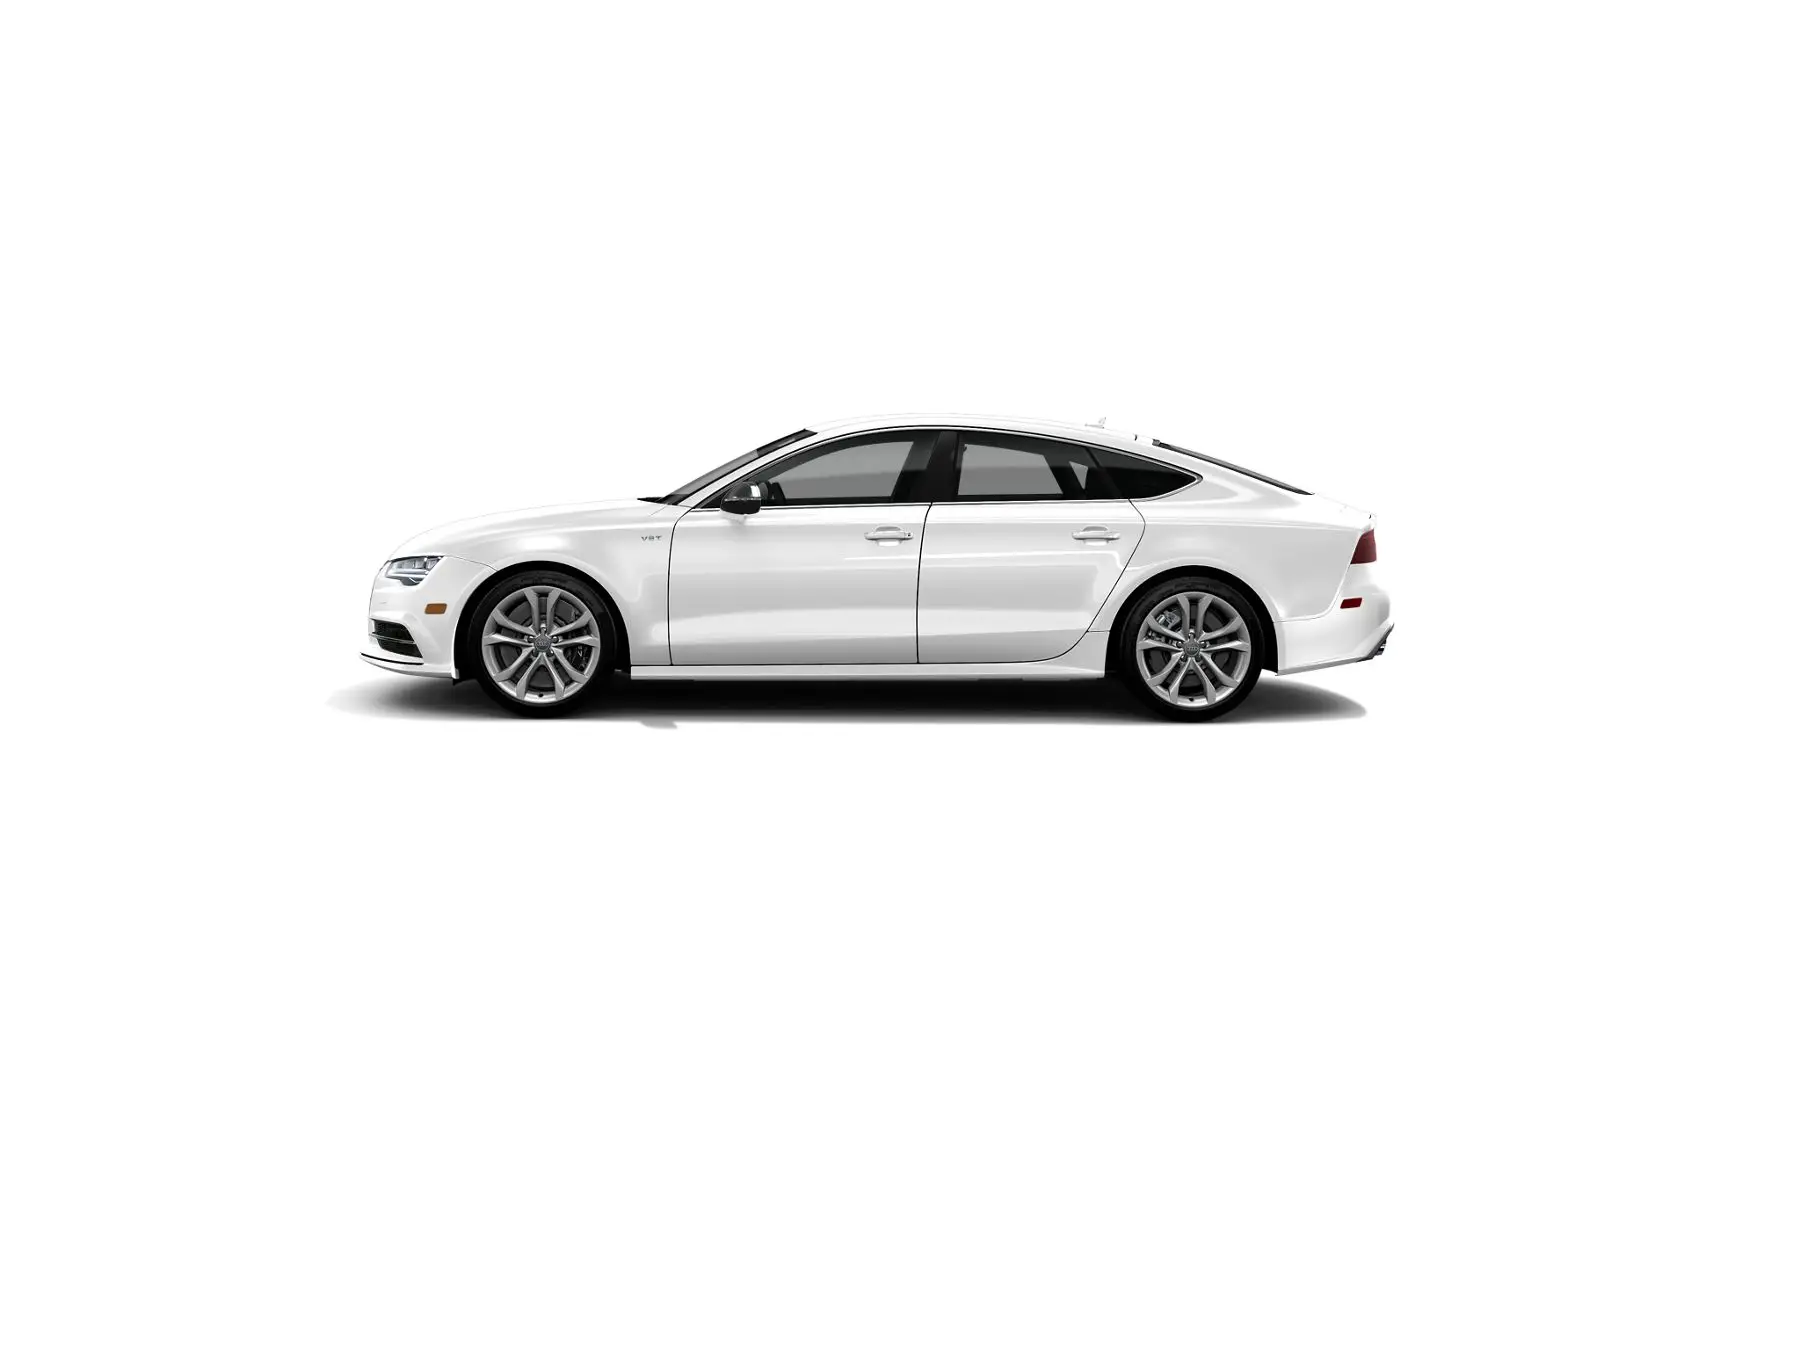 Audi S7 Premium Plus 2017 side view